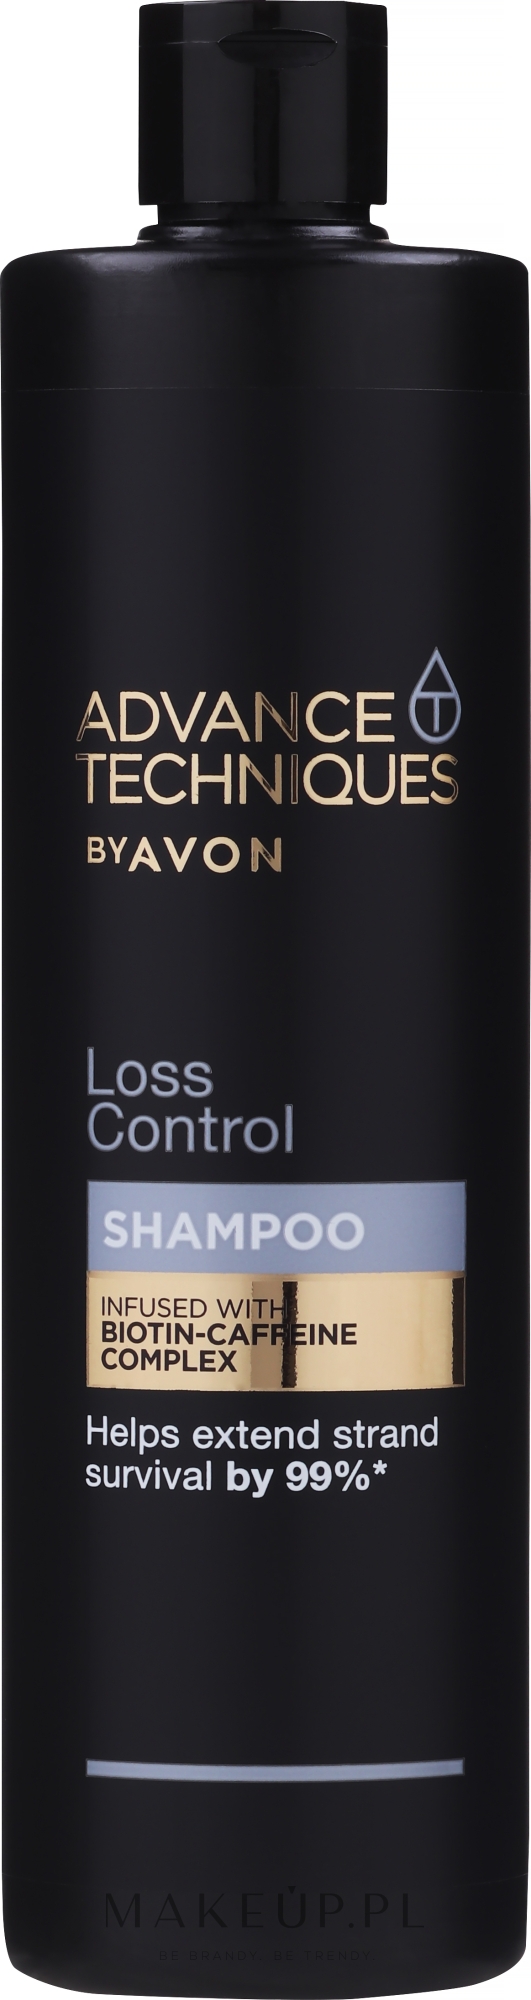 advance techniques szampon avon